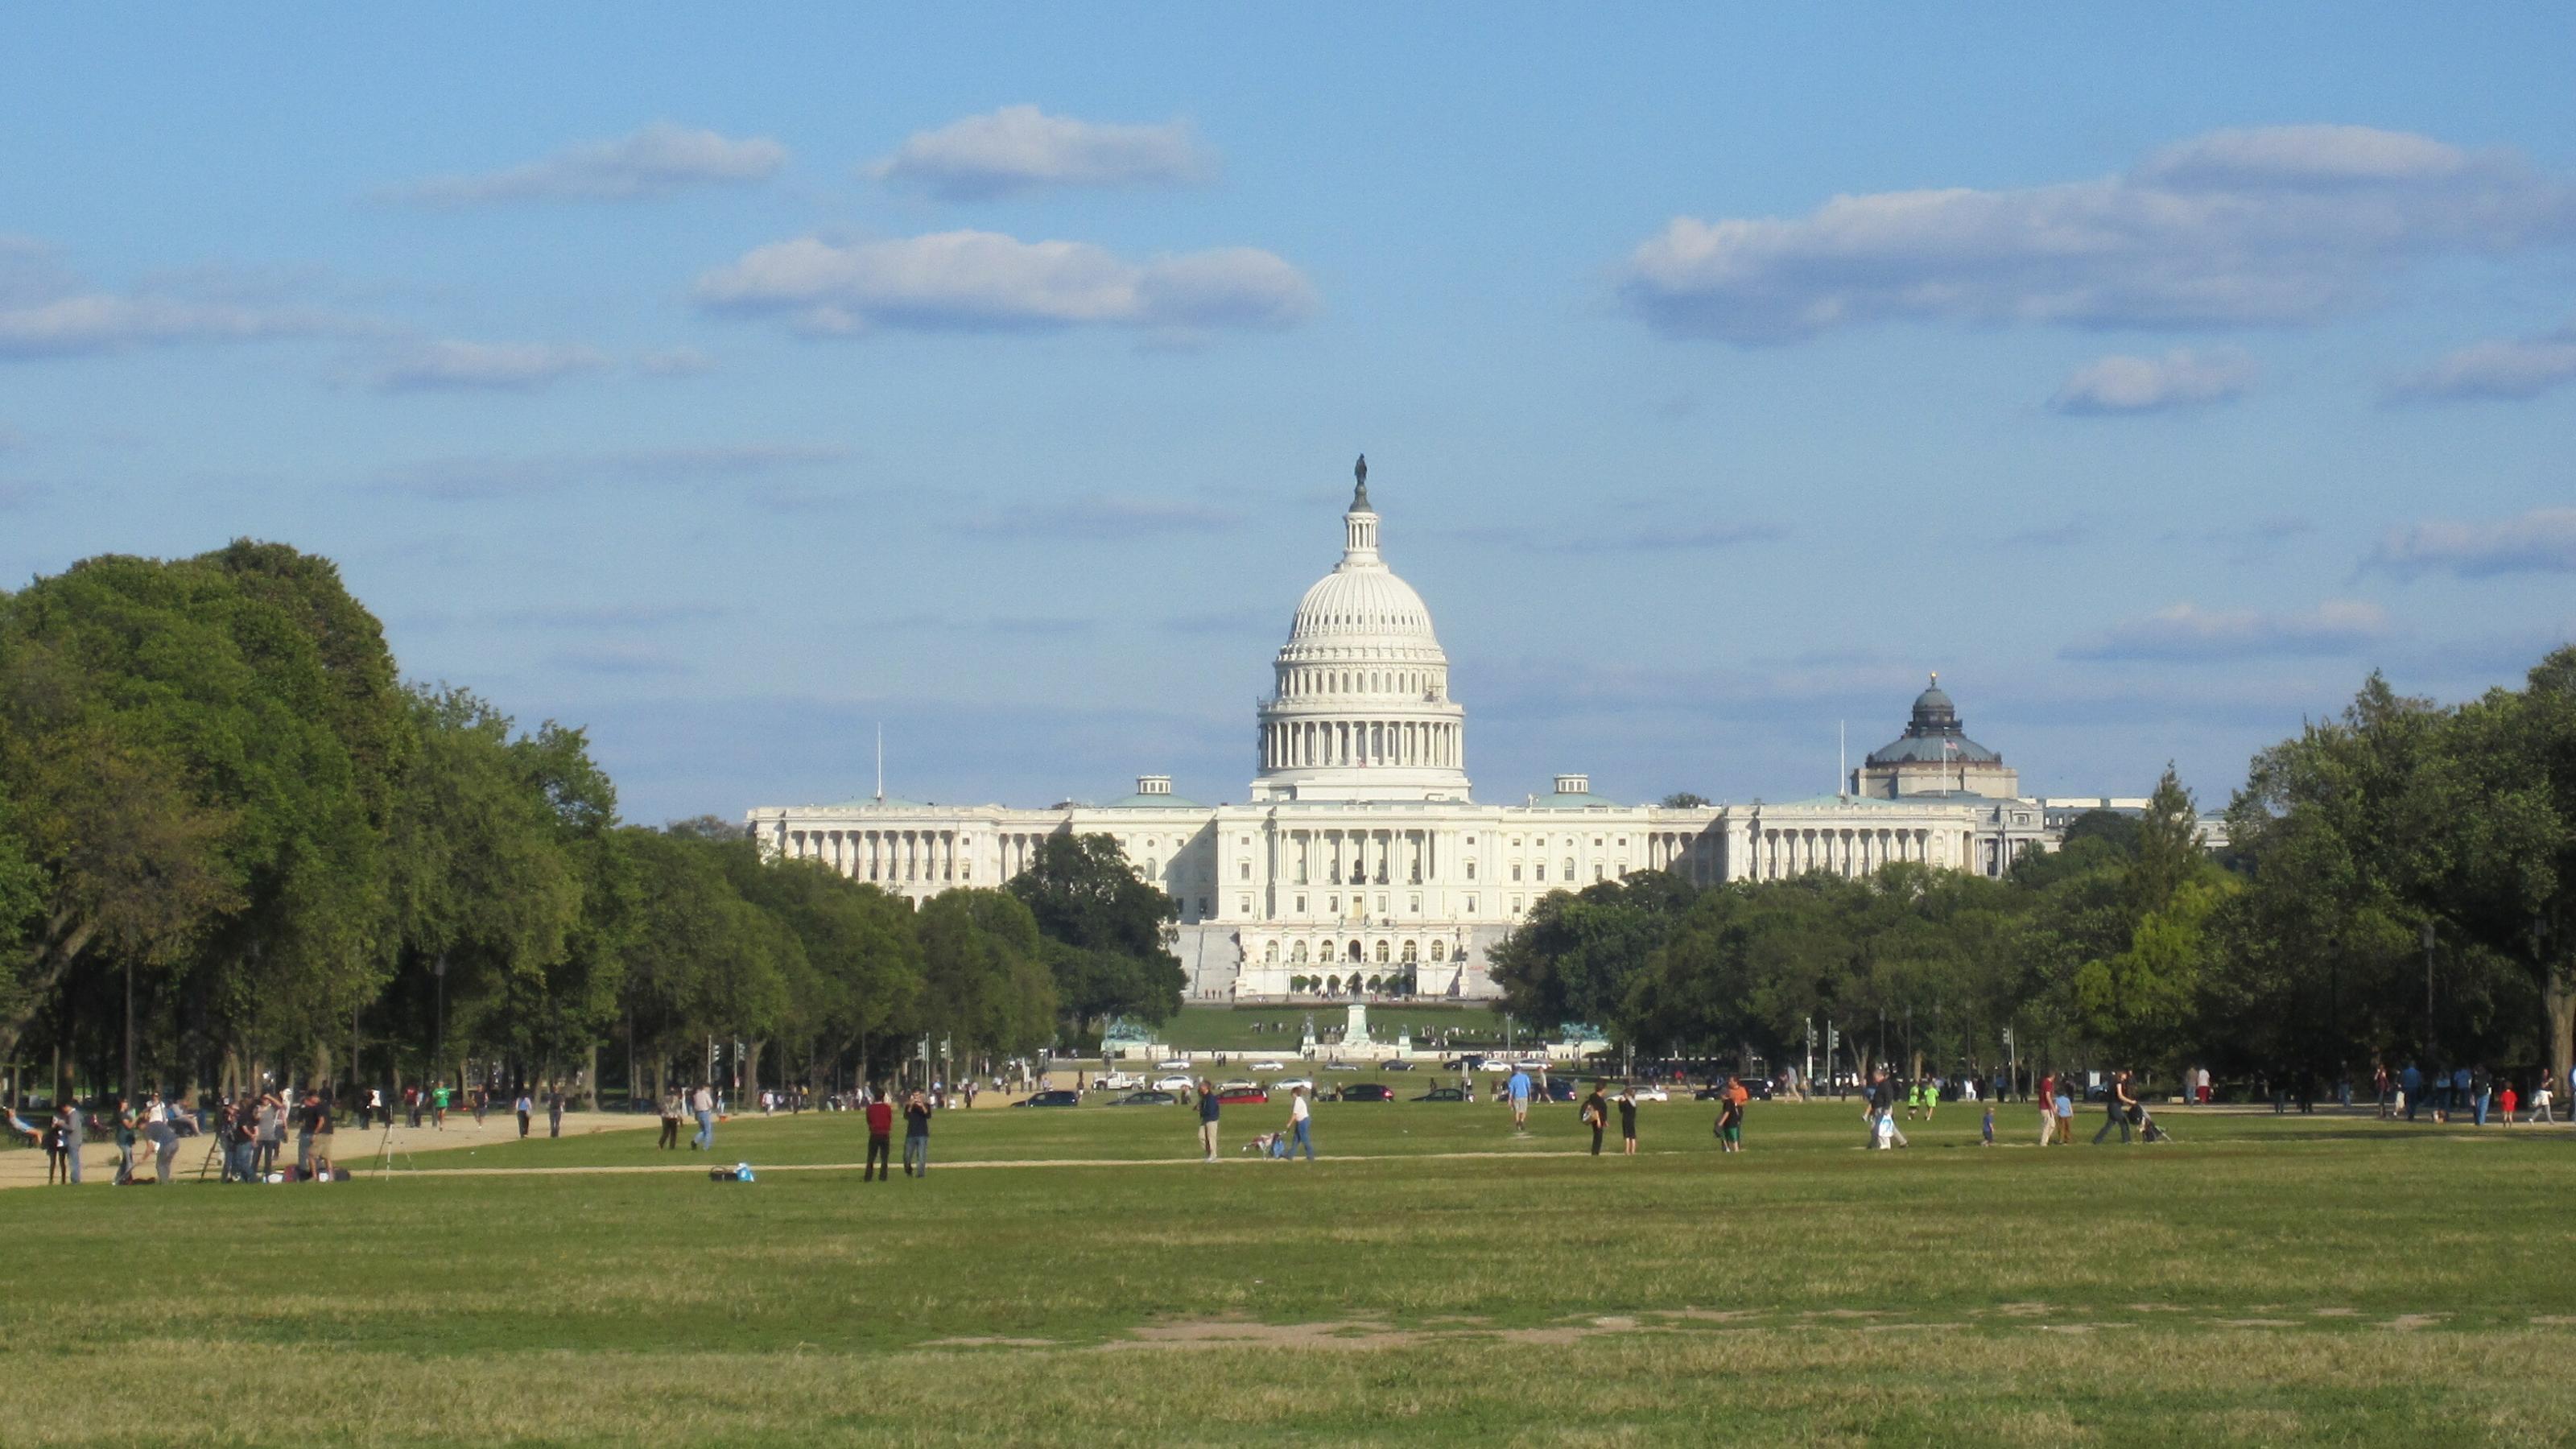 Das Kapitol in Washington, D.C. Im Vordergrund halten sich Menschen auf dem Rasen auf.